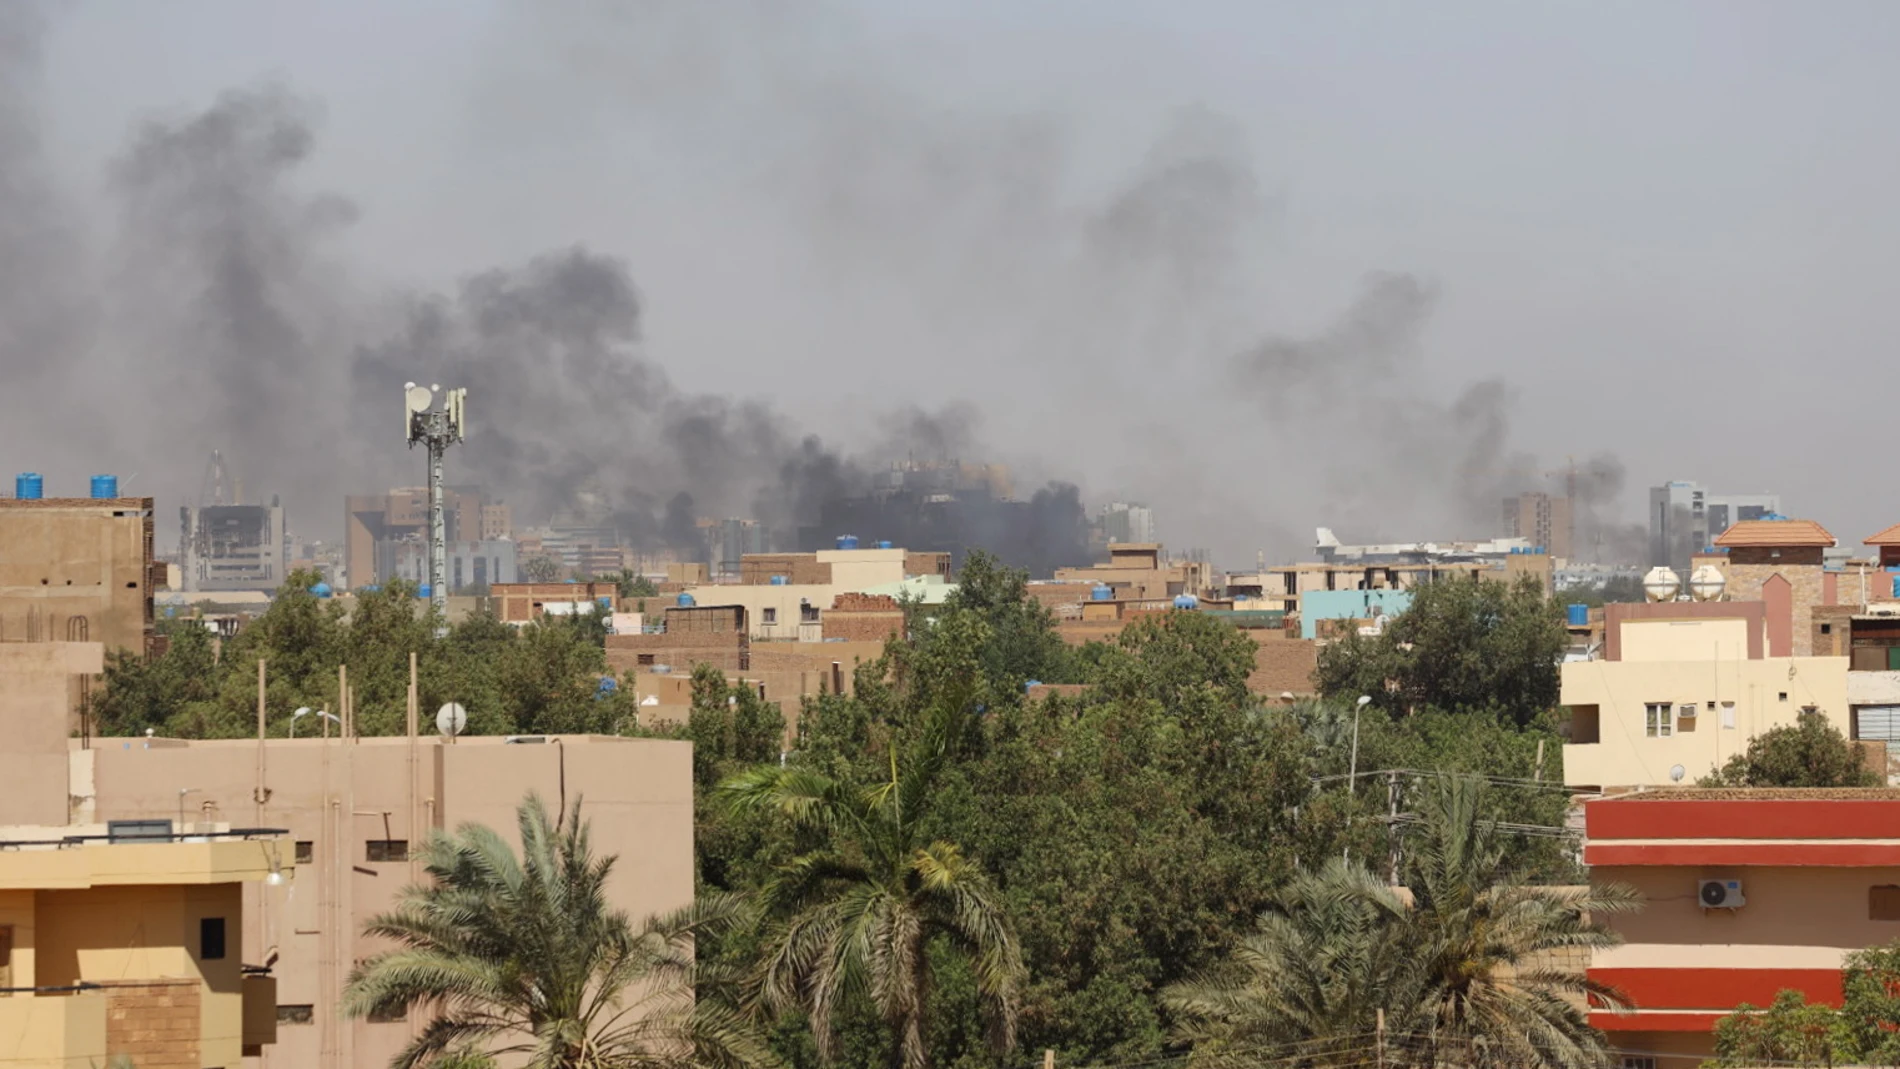 España prepara dos aviones militares para evacuar a los españoles atrapados en Sudán